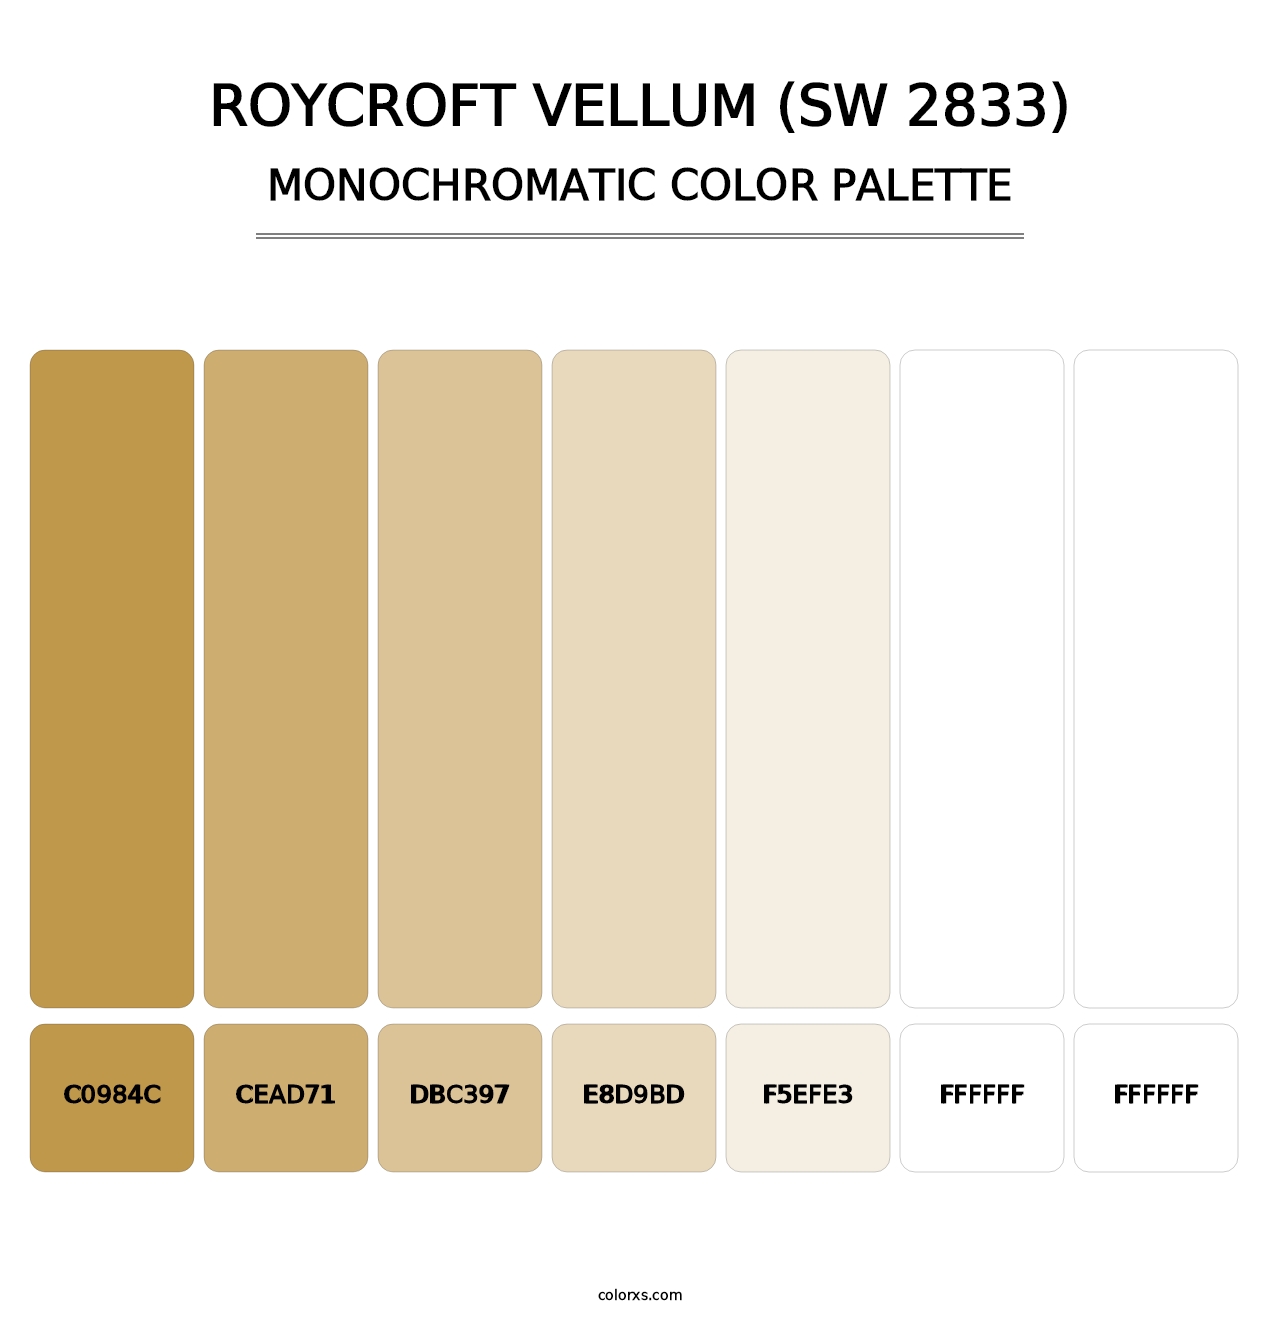 Roycroft Vellum (SW 2833) - Monochromatic Color Palette